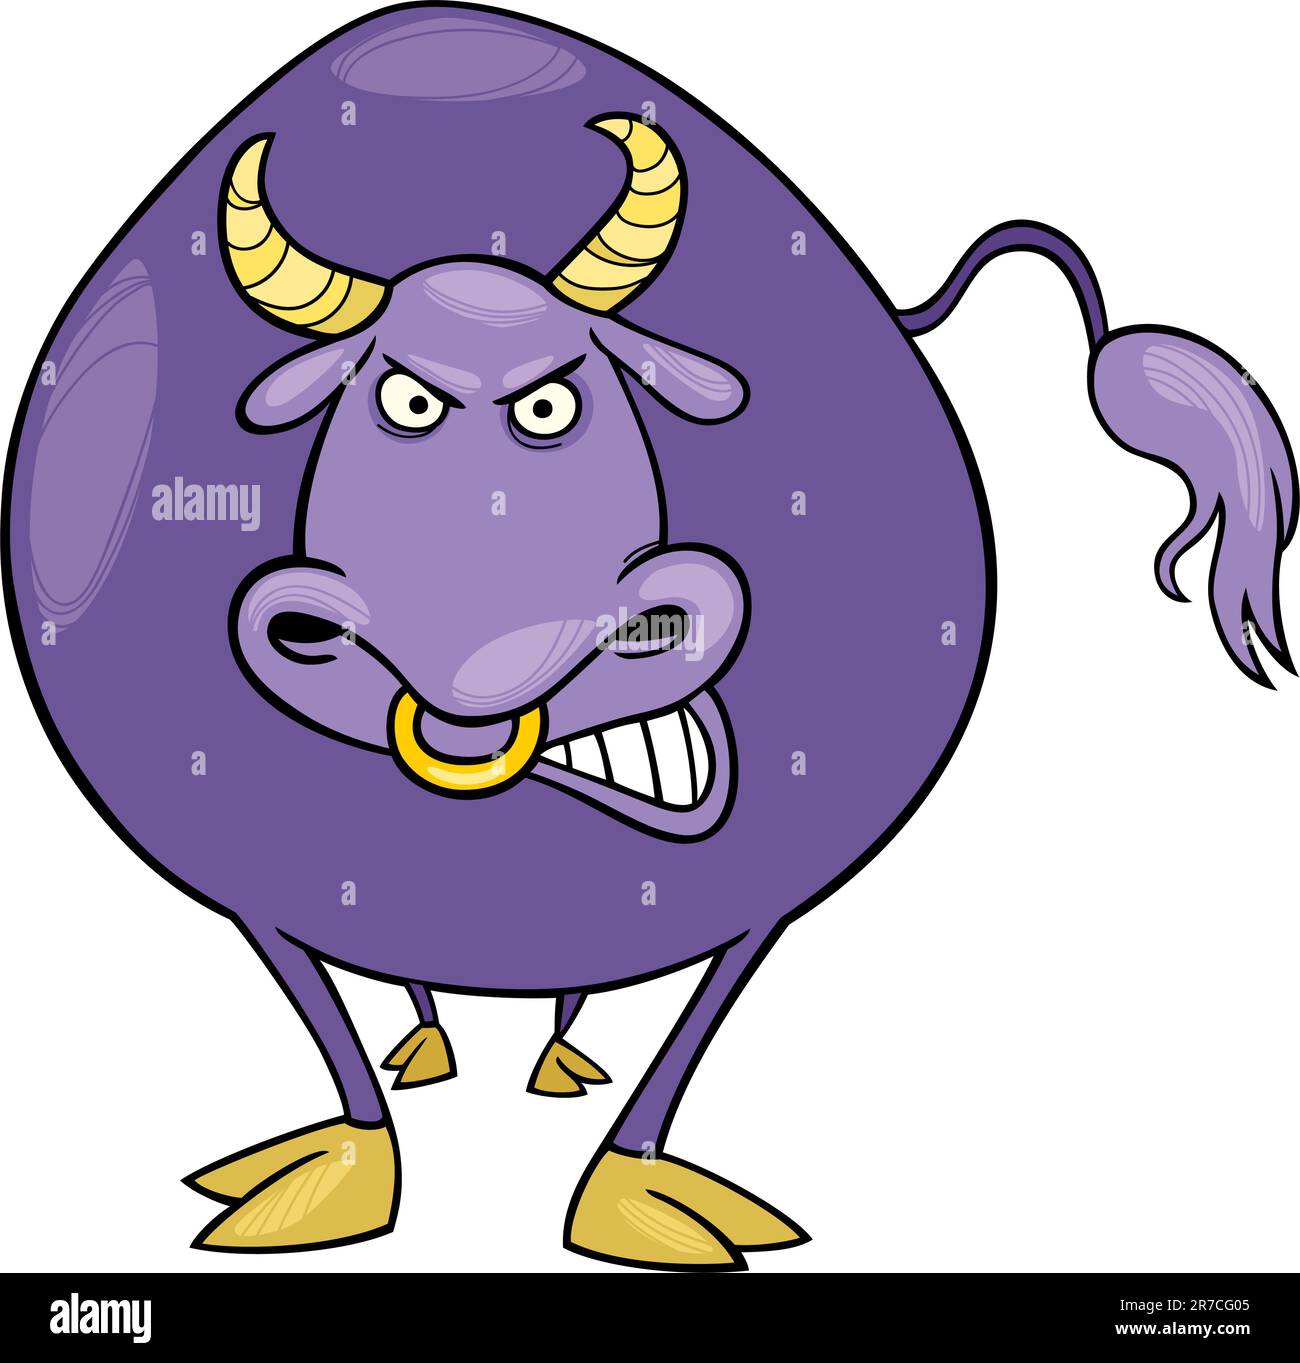 Illustrazione del fumetto di angry bull Illustrazione Vettoriale